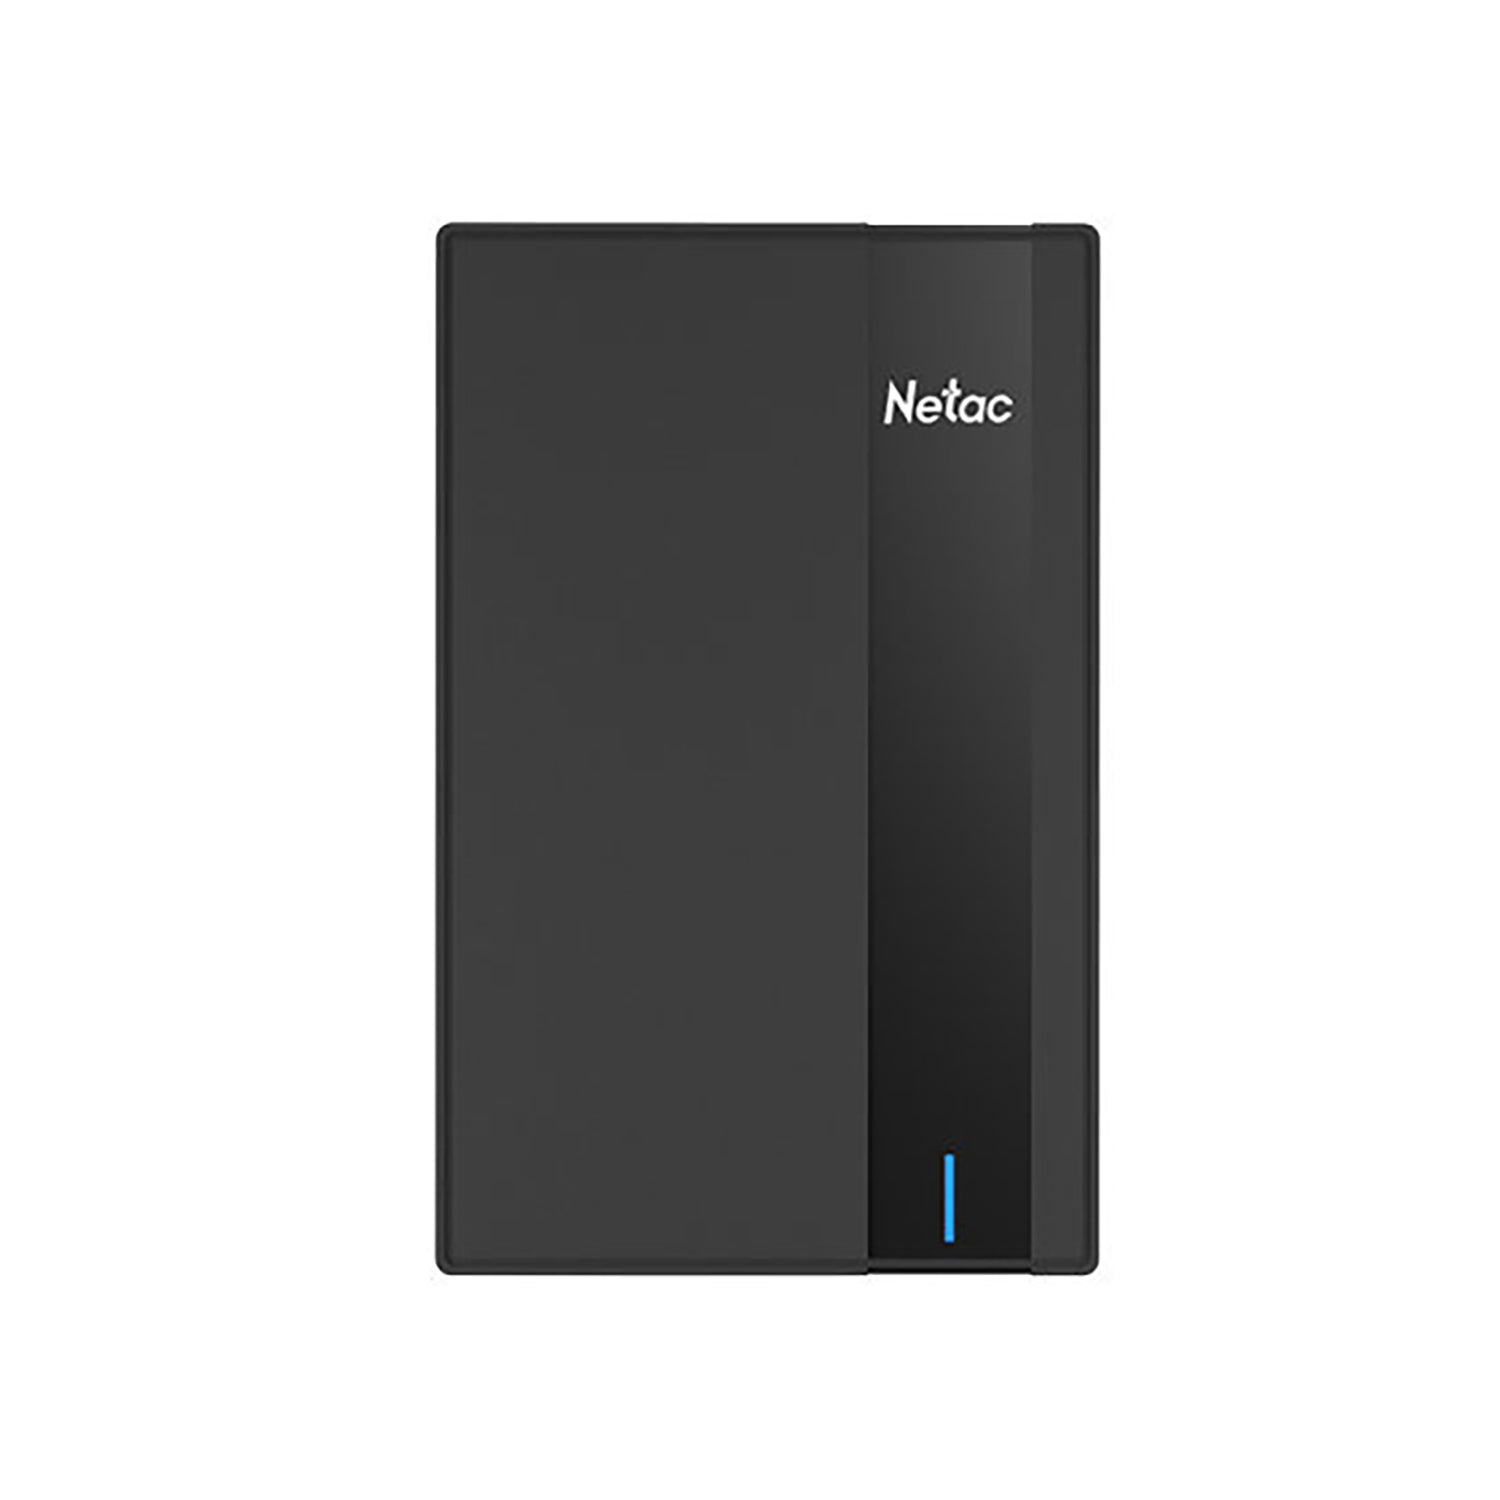 Netac - Disque Dur Externe USB 3.0, Capacité de 2TO